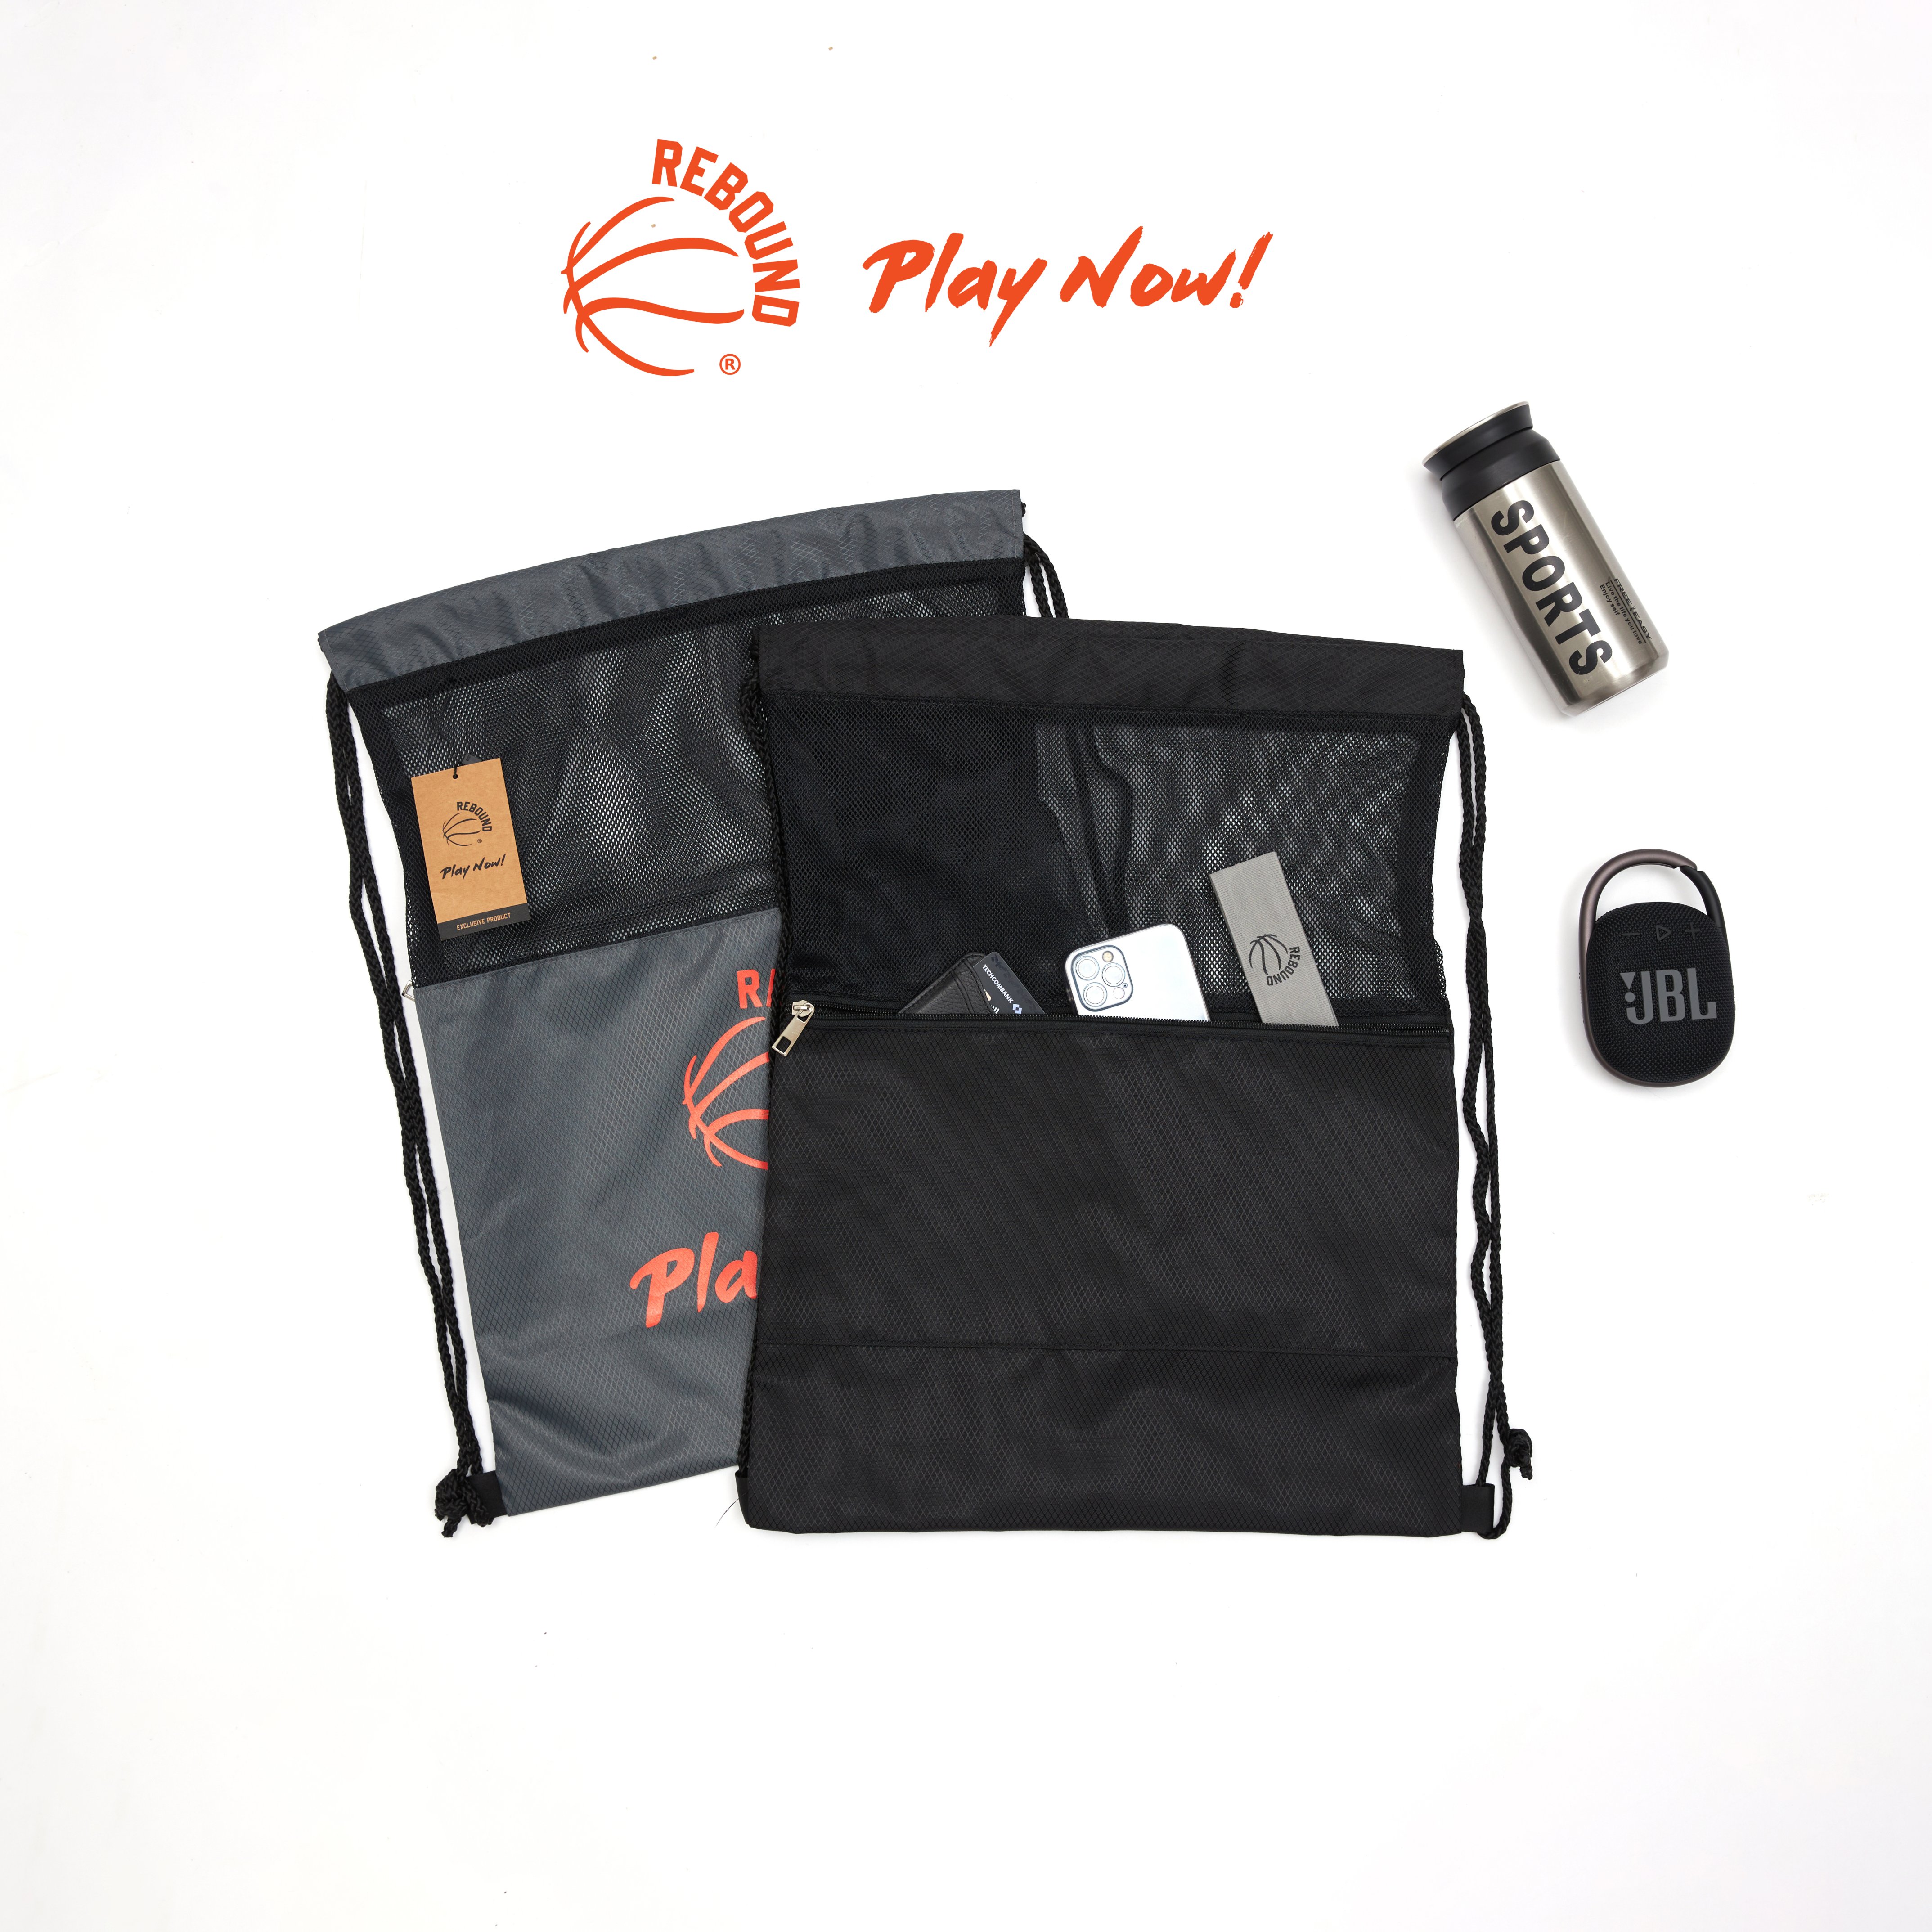 Túi dây rút Rebound - Play Now! 2 ngăn chống thấm đựng bóng, bình nước, điện thoại, ví, giày, phụ kiện,...